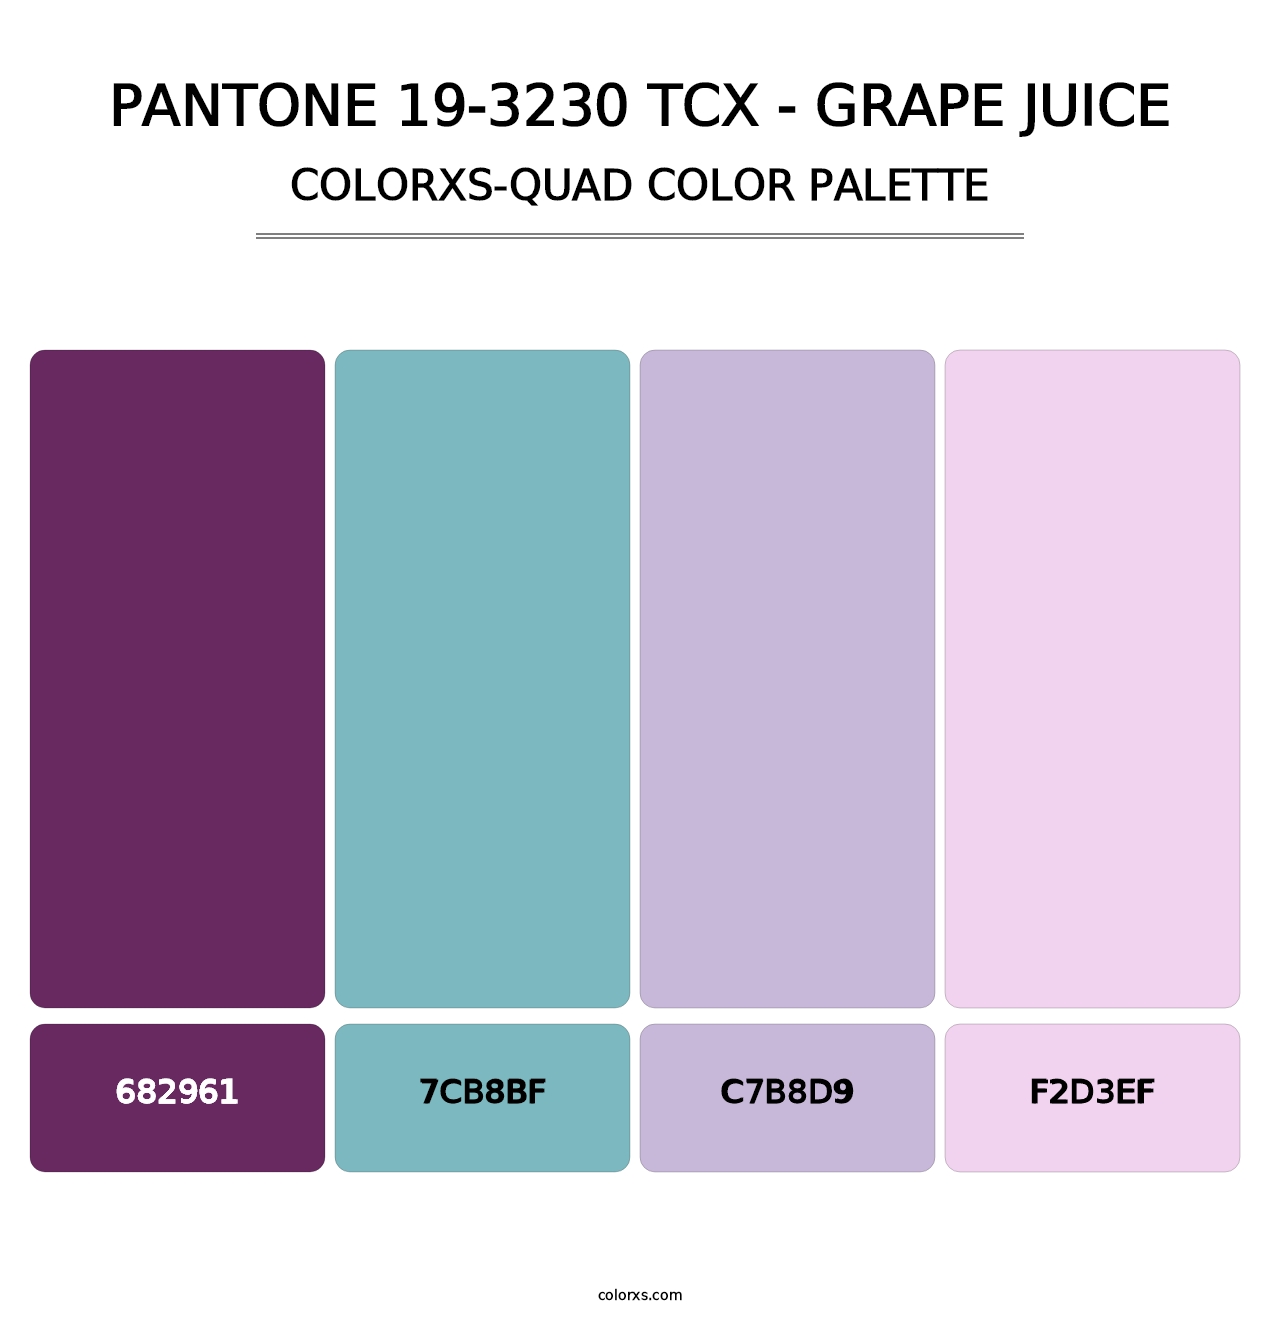 PANTONE 19-3230 TCX - Grape Juice - Colorxs Quad Palette